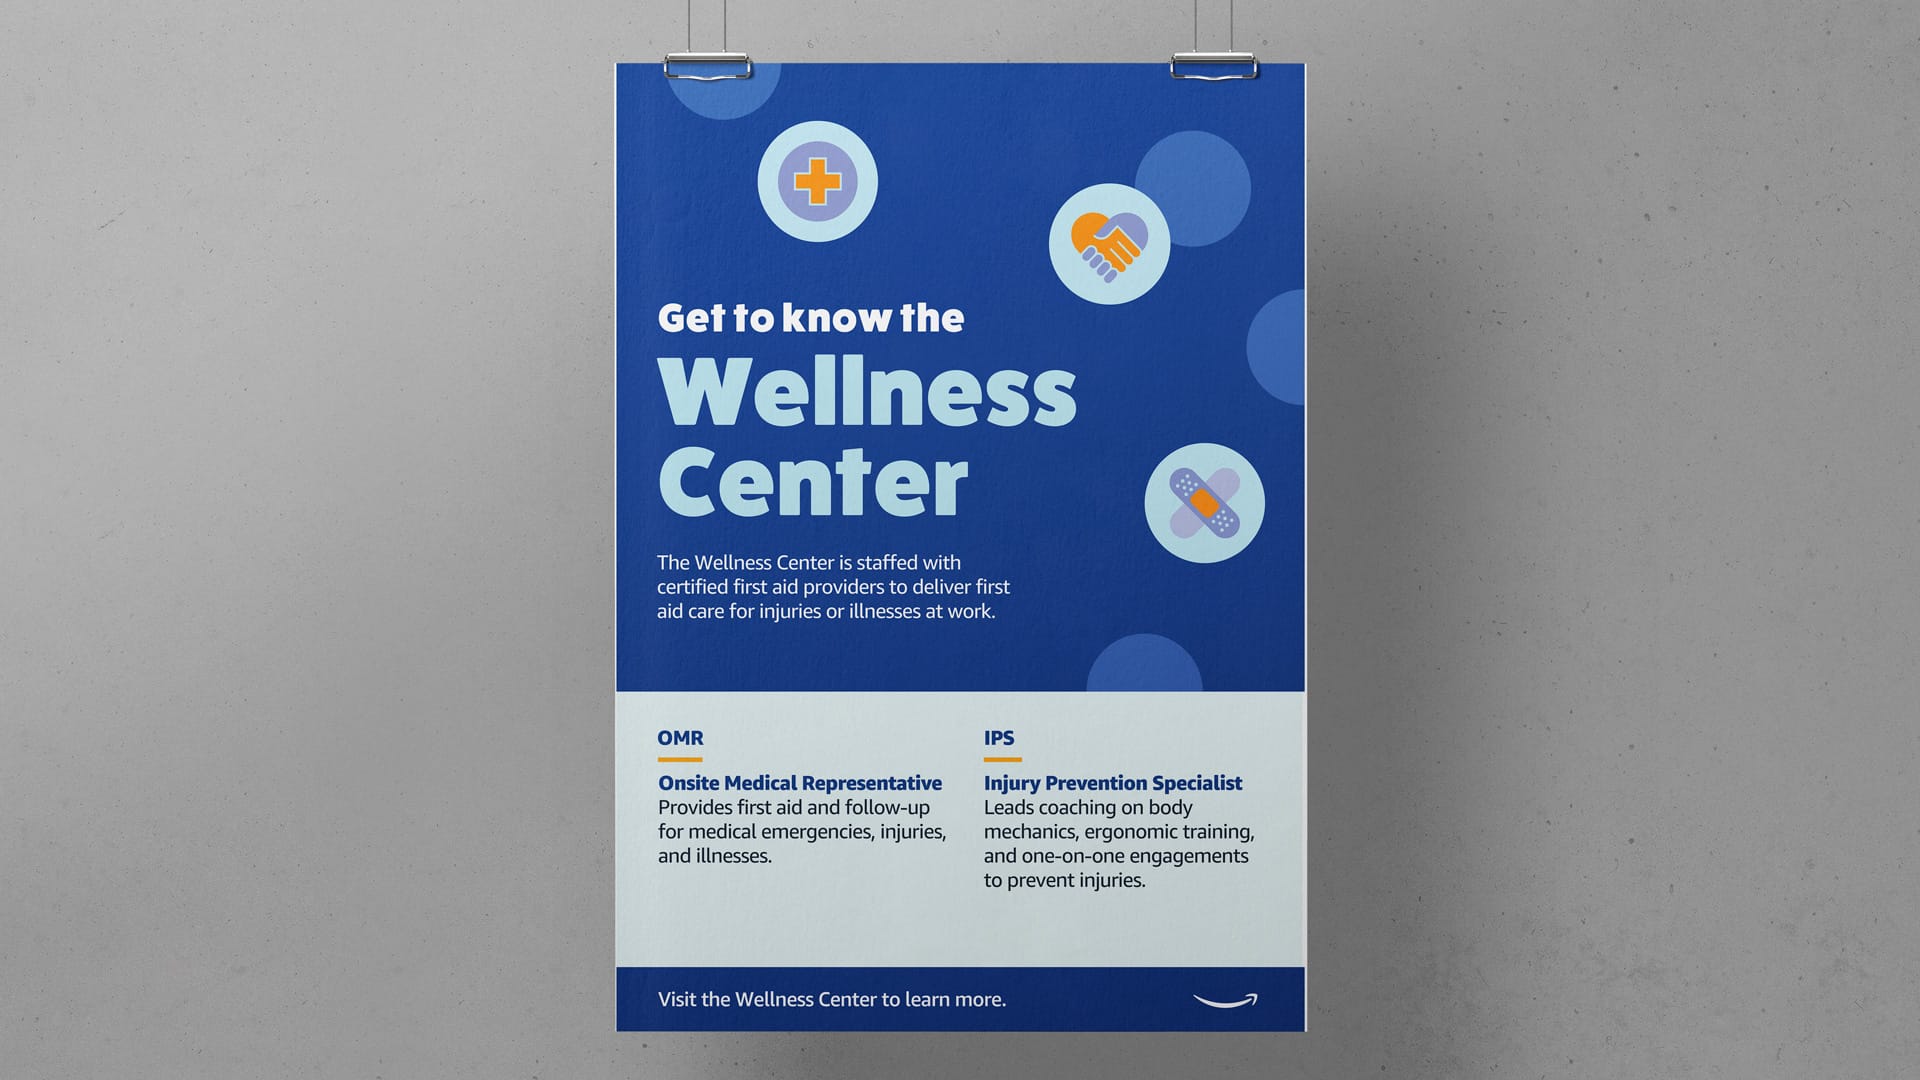 An image of a wellness center poster